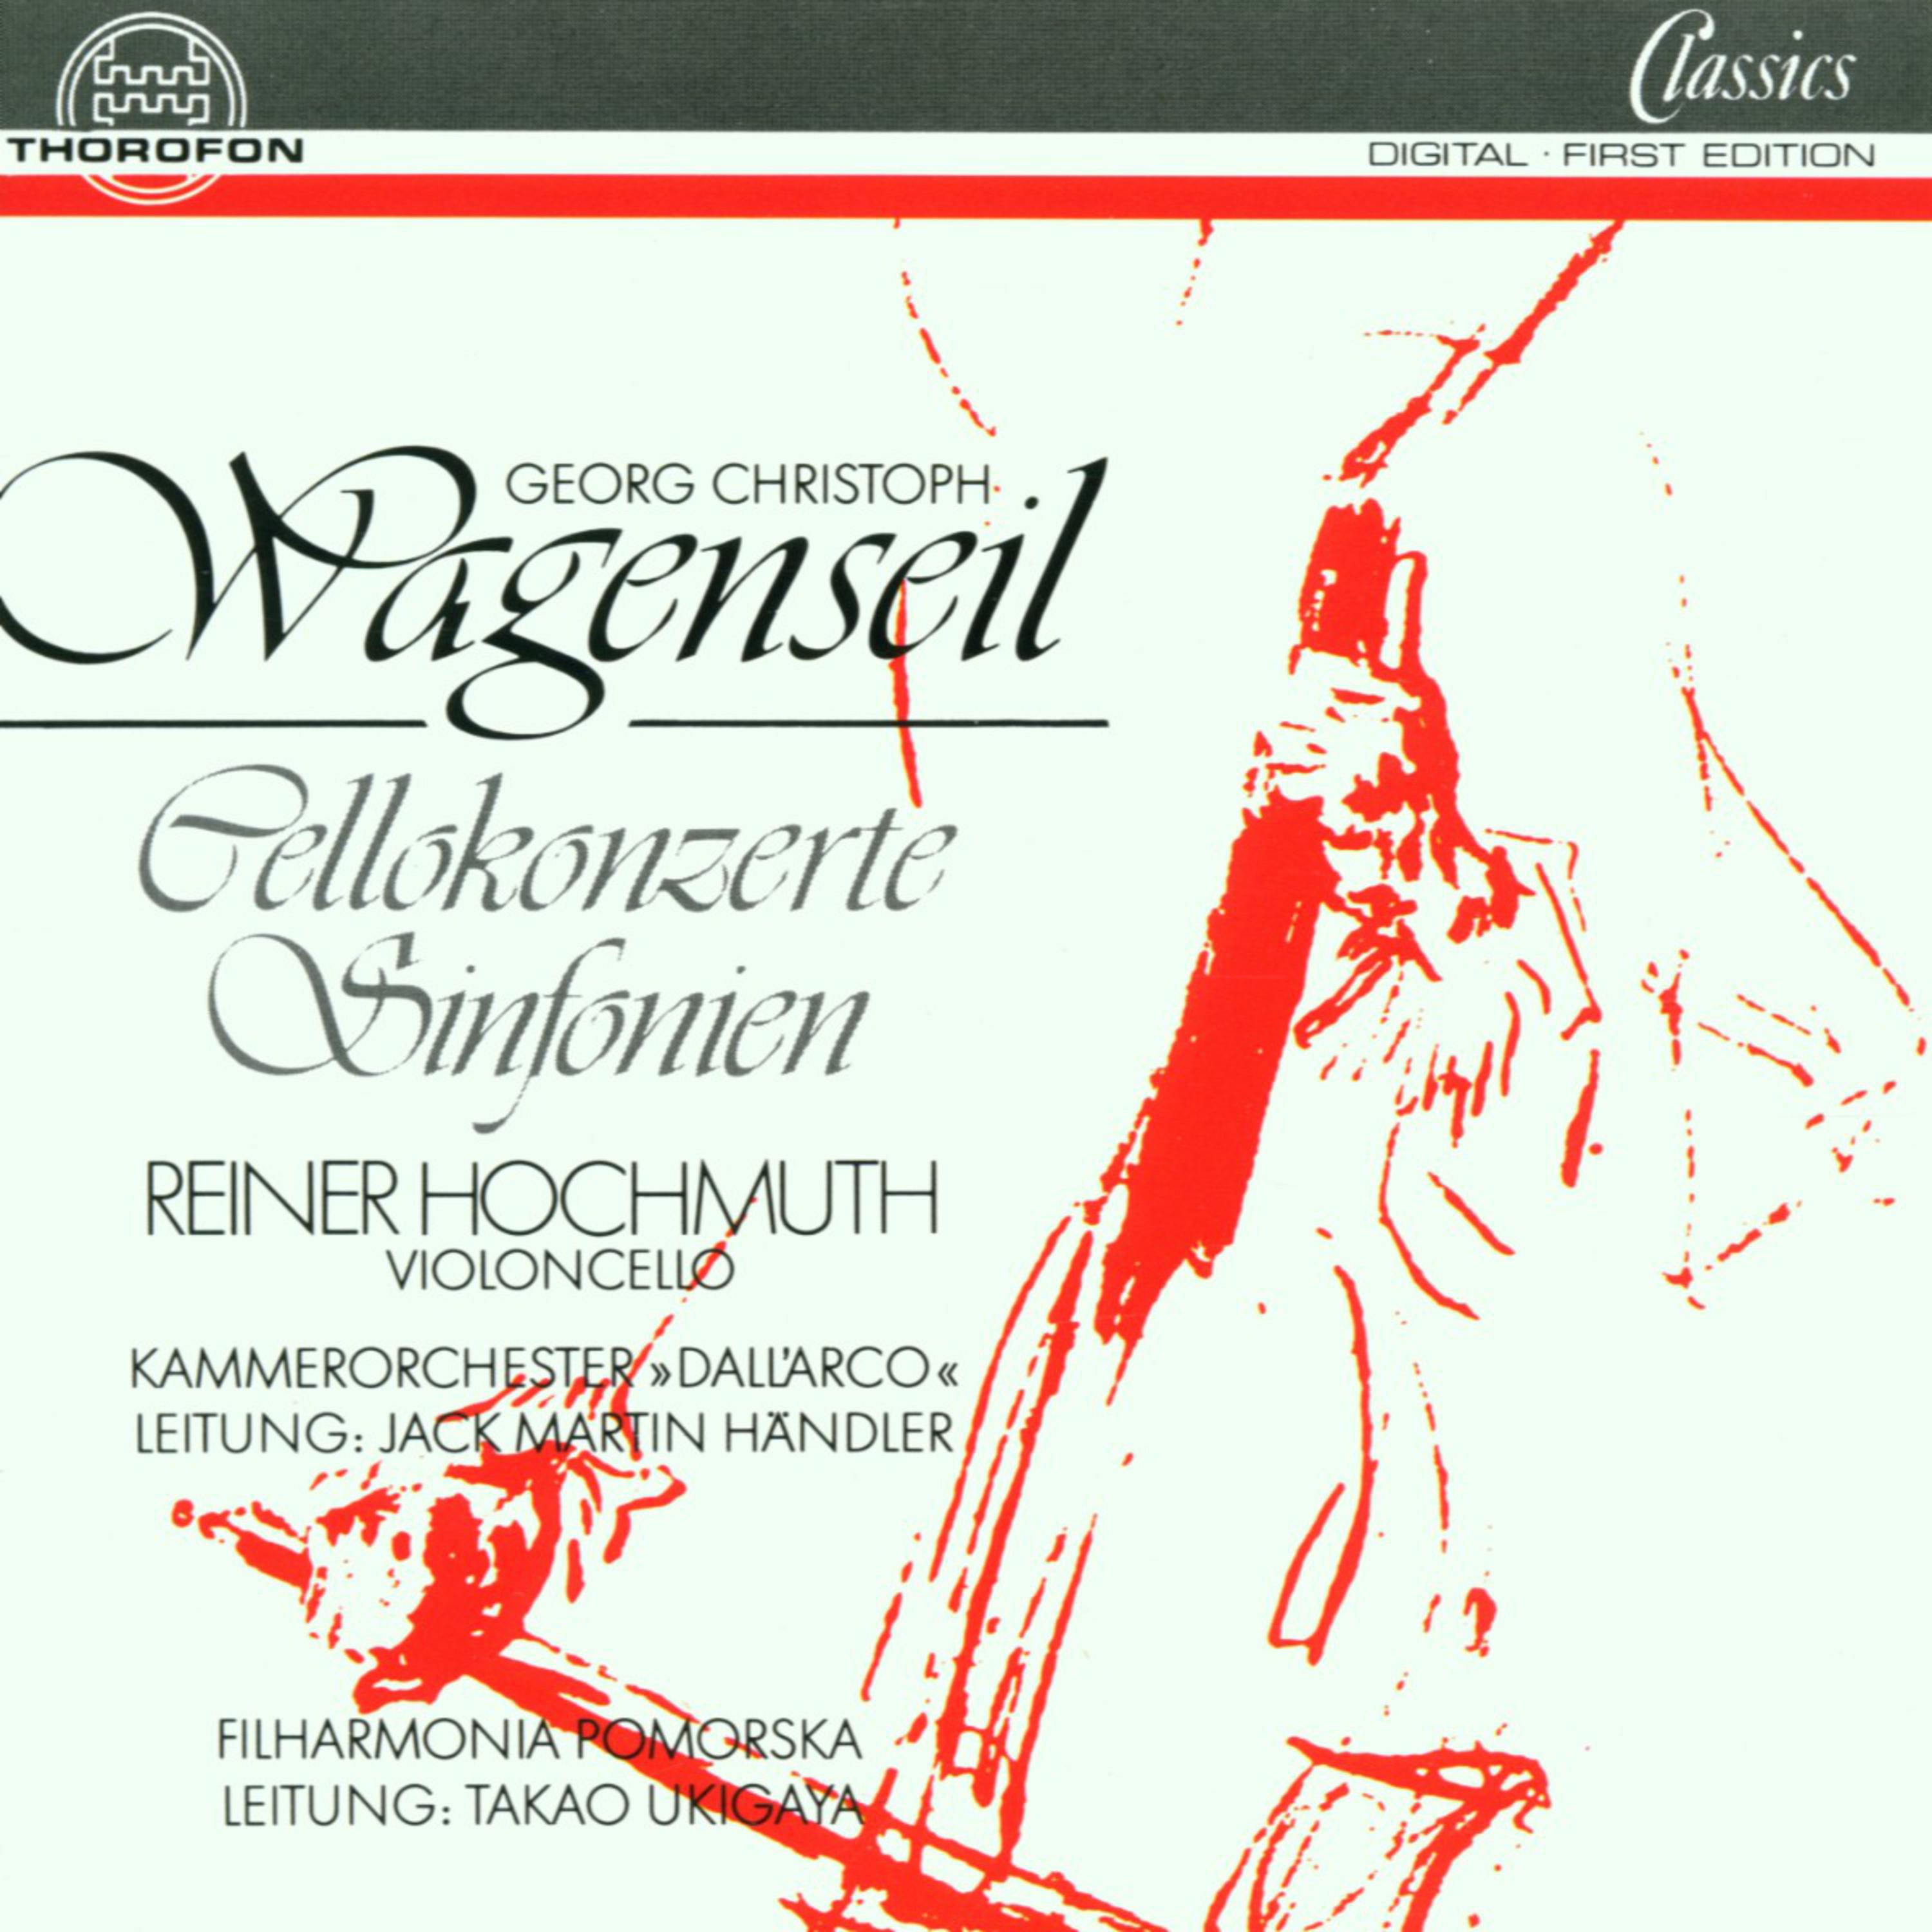 Concerto In C fü r Violoncello und Orchester: II. Larghetto